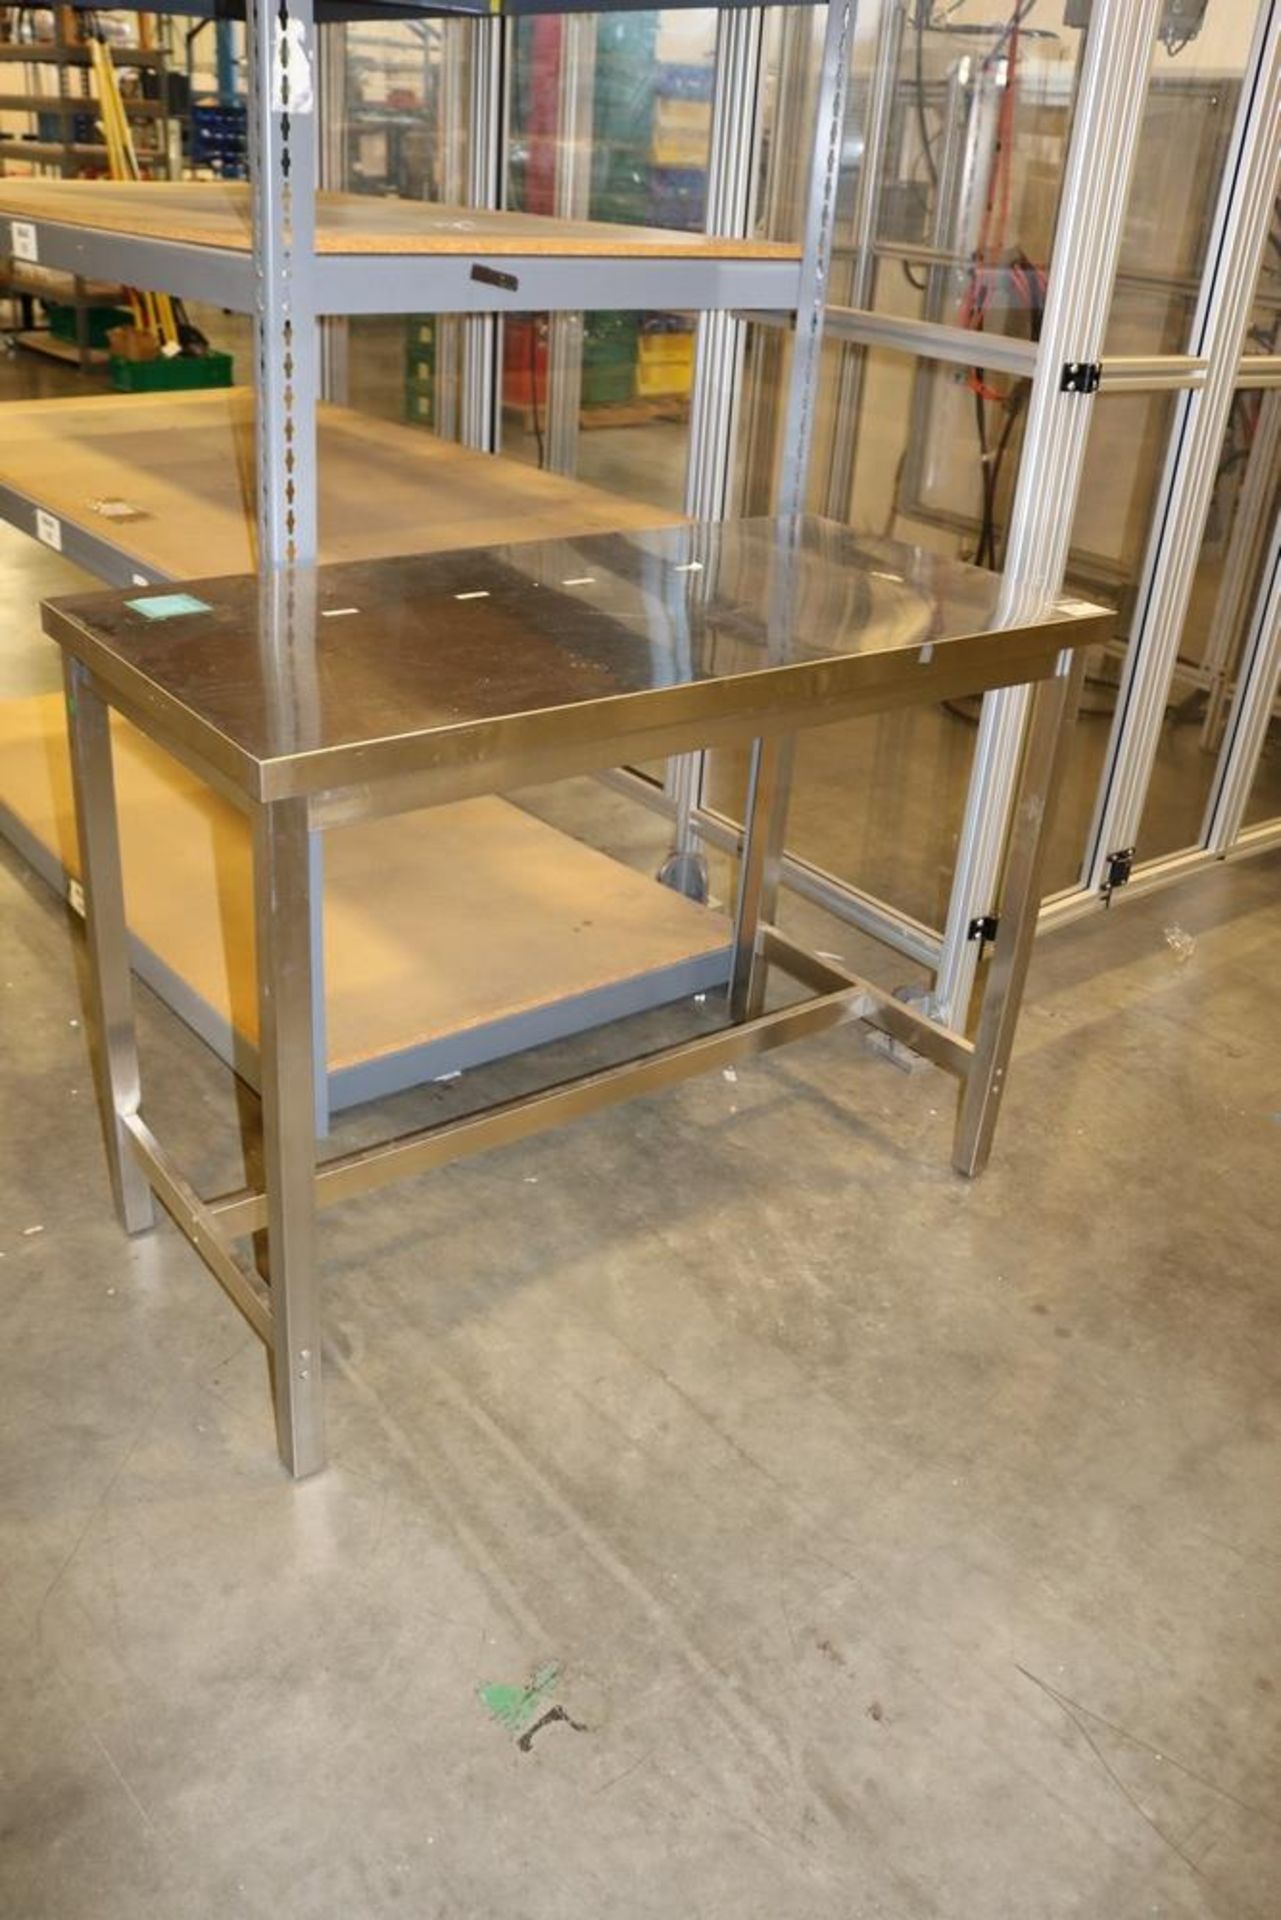 5 Tier Heavy Duty Storage Rack 6'L x 36" W x 7'H w/ Stainless Steel work Table 2' x 4' x 3' - Image 3 of 5